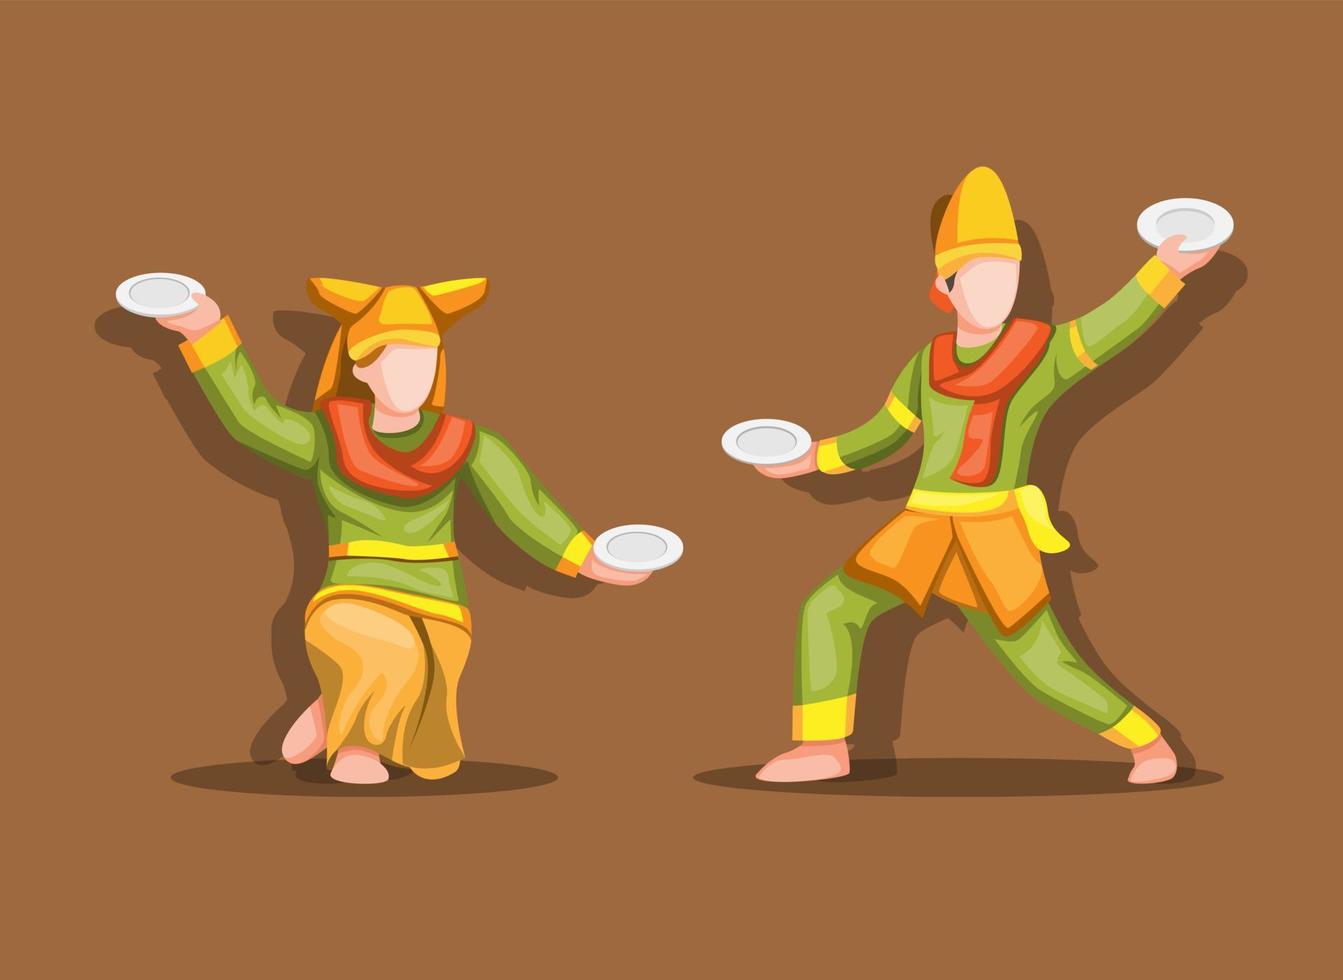 tarian piring aka plate dance è una danza tradizionale del minangkabau. vettore dell'illustrazione del fumetto di concetto di sumatra occidentale, indonesia